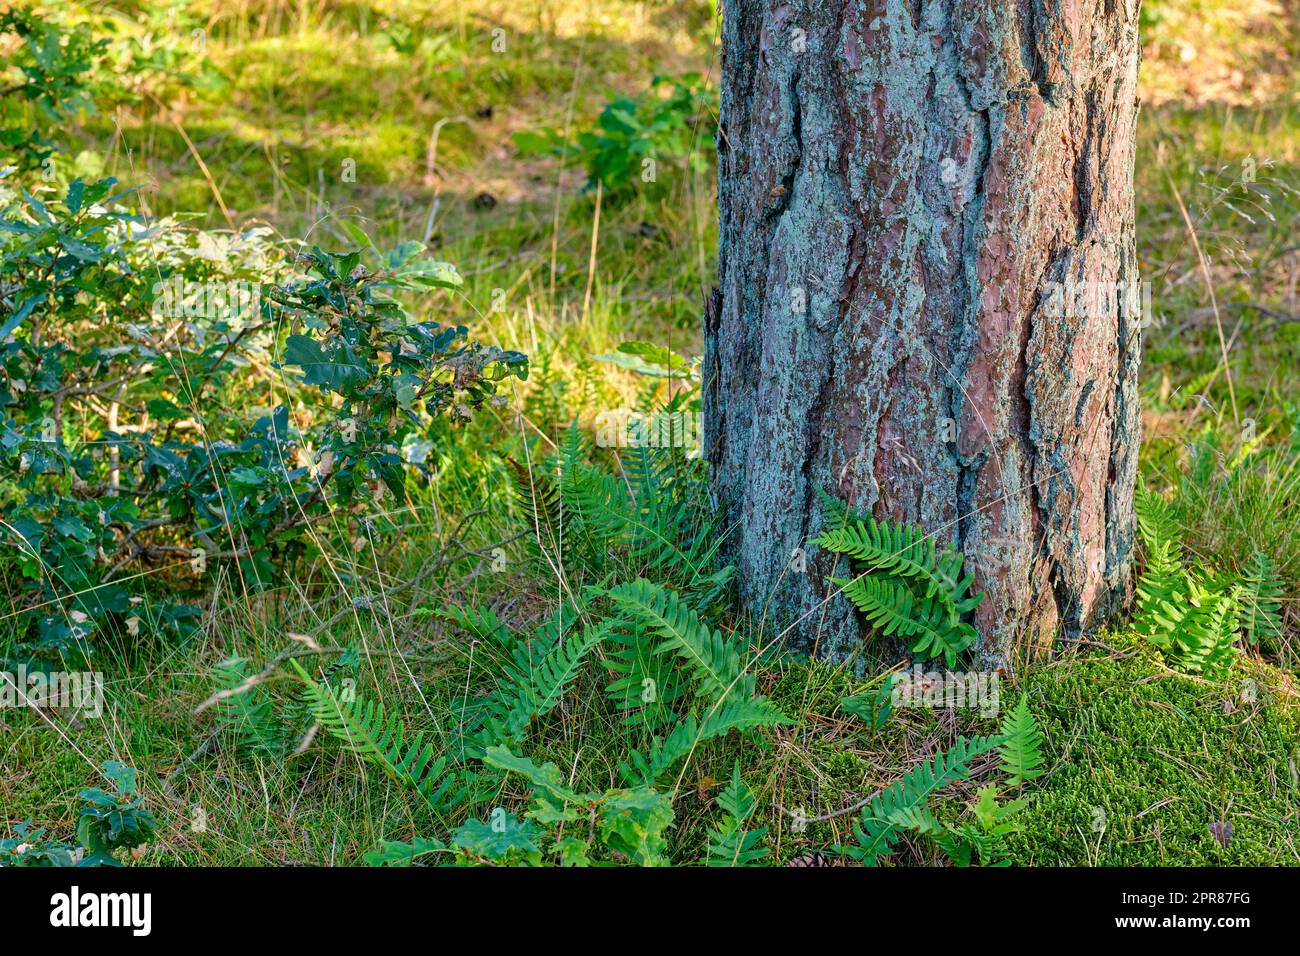 Nahaufnahme eines großen Baumes im Wald mit grünem Moos in der Natur. Ein großer Baumstumpf im Wald mit Details von Rinde und lebendigen Pflanzen, Sträuchern und Gras in der Umgebung an einem sonnigen Tag Stockfoto